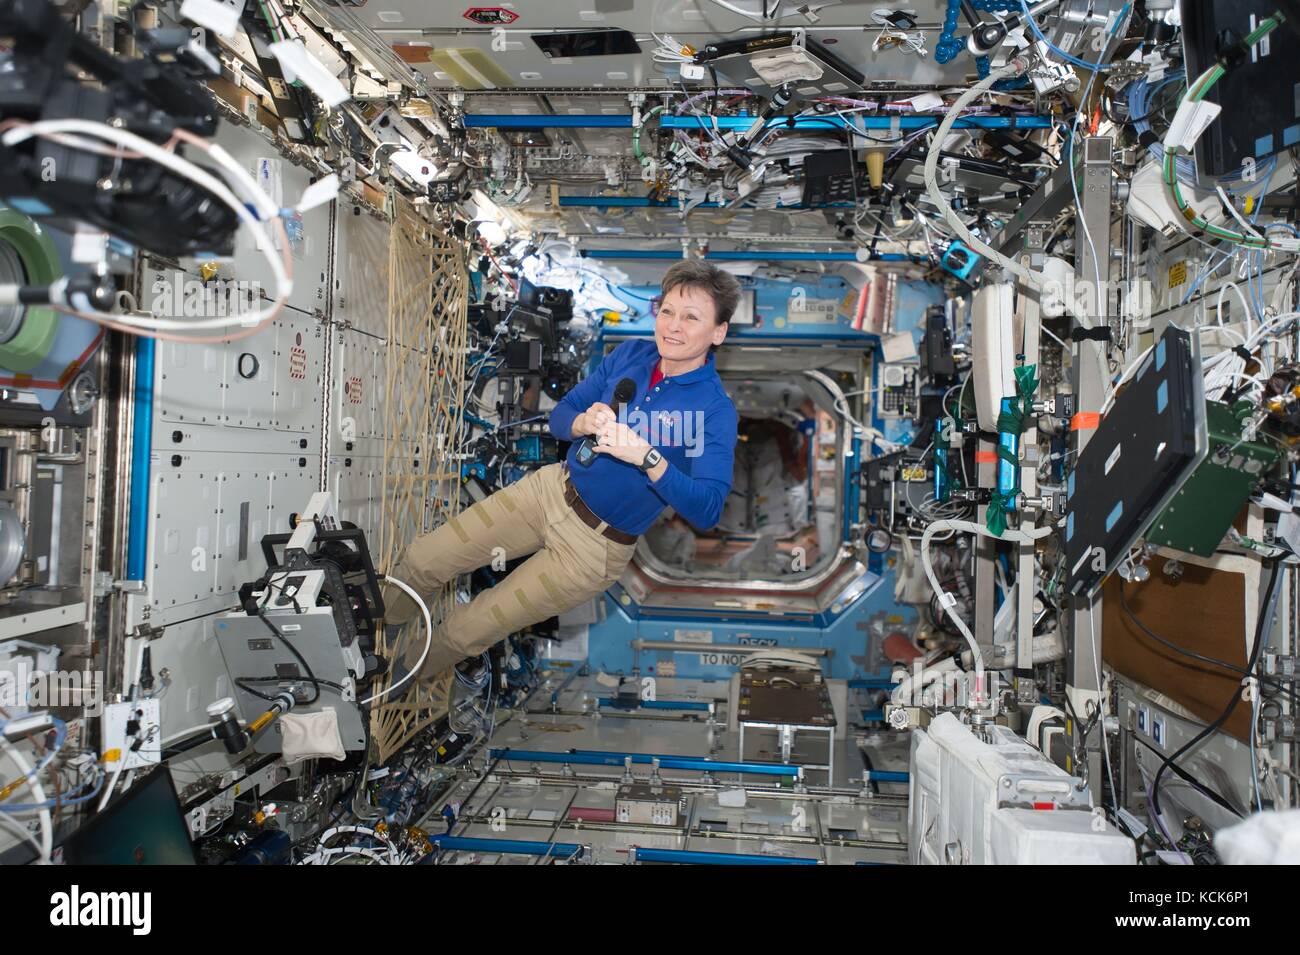 La station spatiale internationale de la nasa le premier membre de l'équipage Expedition 51 L'astronaute américaine Peggy Whitson effectue une entrevue vidéo en direct avec les journalistes sur la terre le 28 juin 2017, dans l'orbite de la terre. (Photo de la nasa photo via planetpix) Banque D'Images